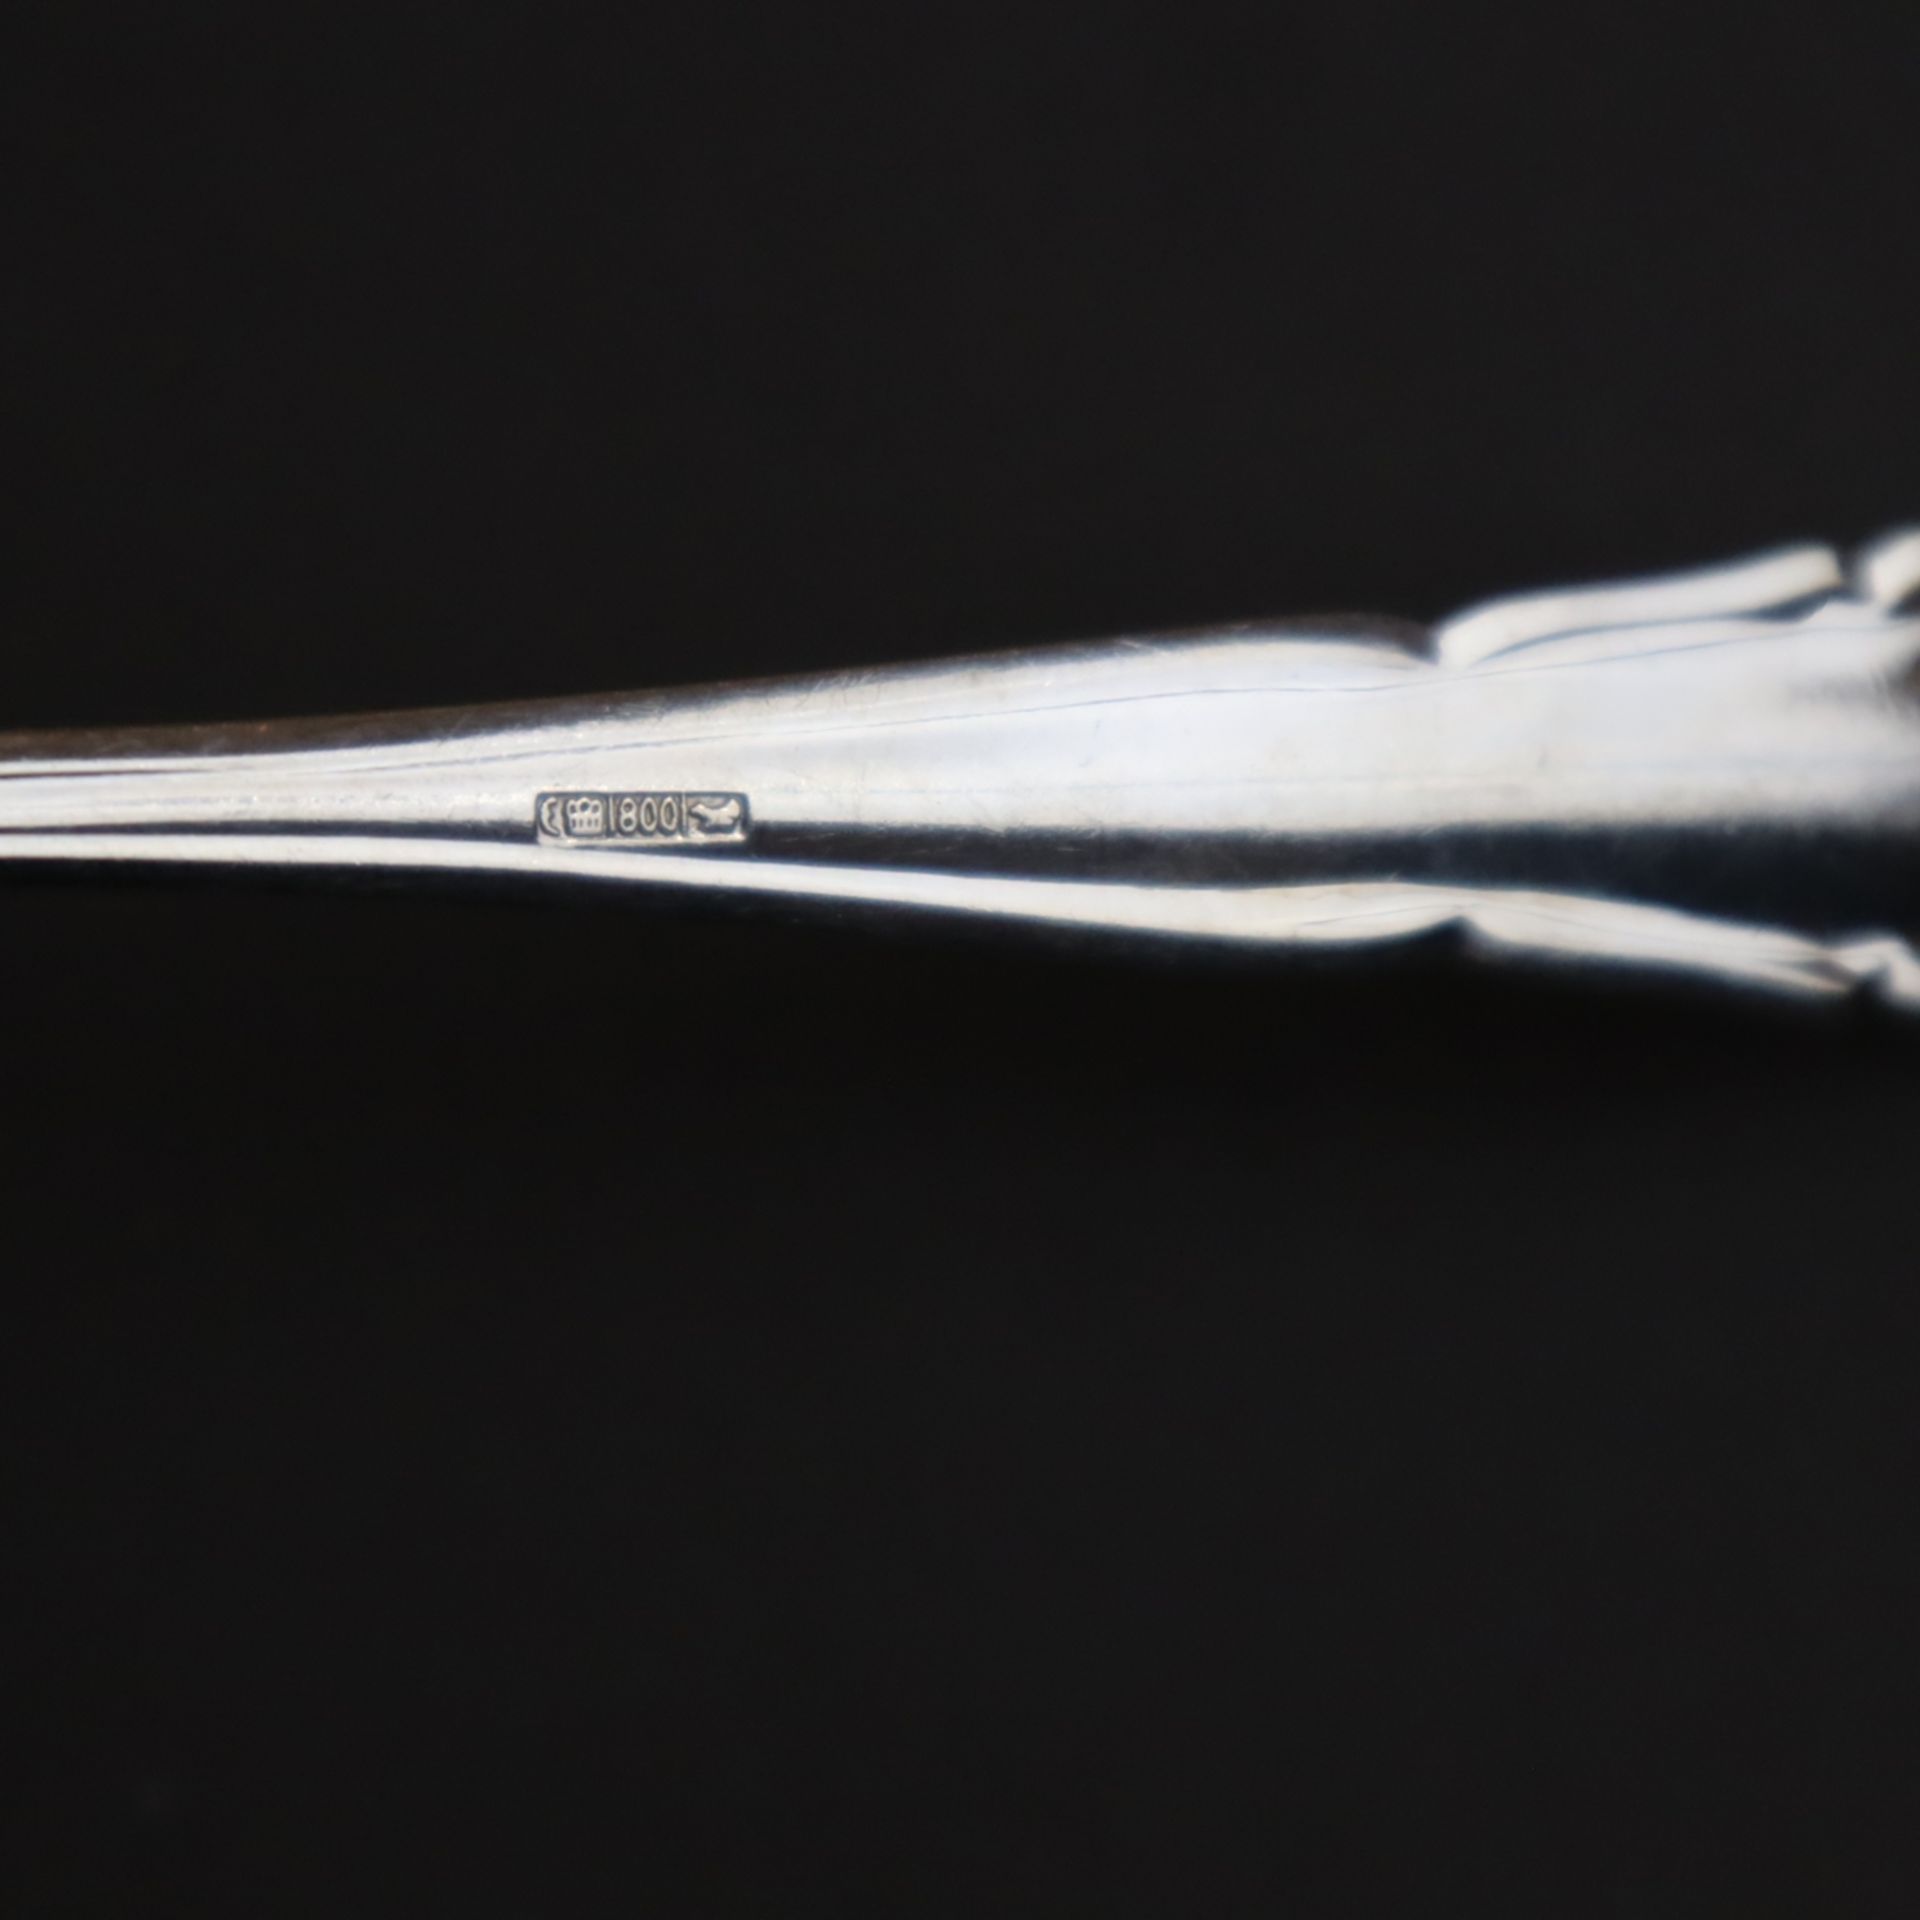 Zwölf Speisegabeln - Silber 800/000, geschweifte Griffe, Punzierung: Halbmond, Krone, 800, Auerhahn - Bild 4 aus 4